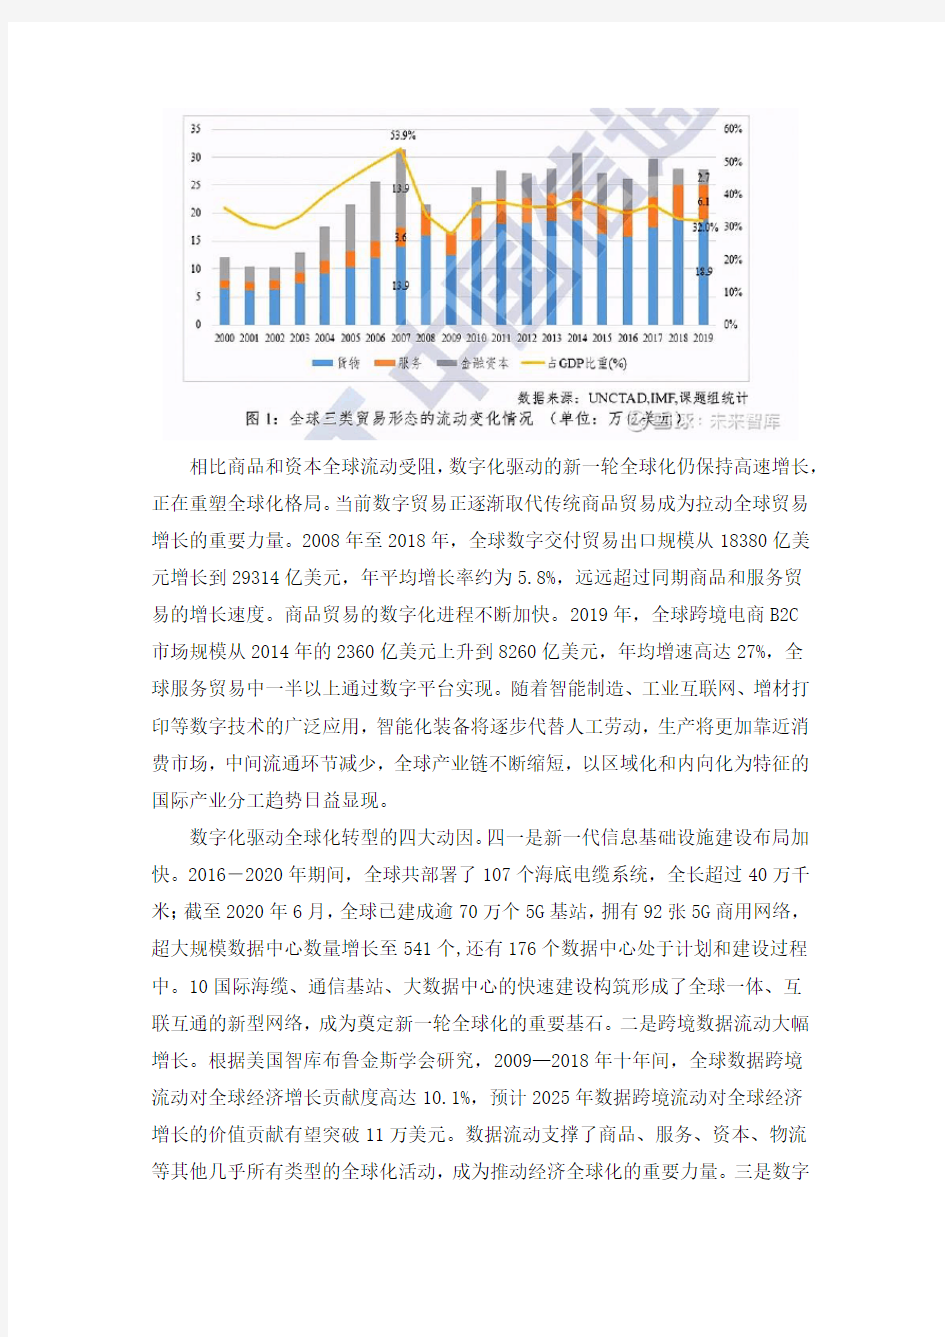 中国信通院全球数字治理白皮书(2020年)